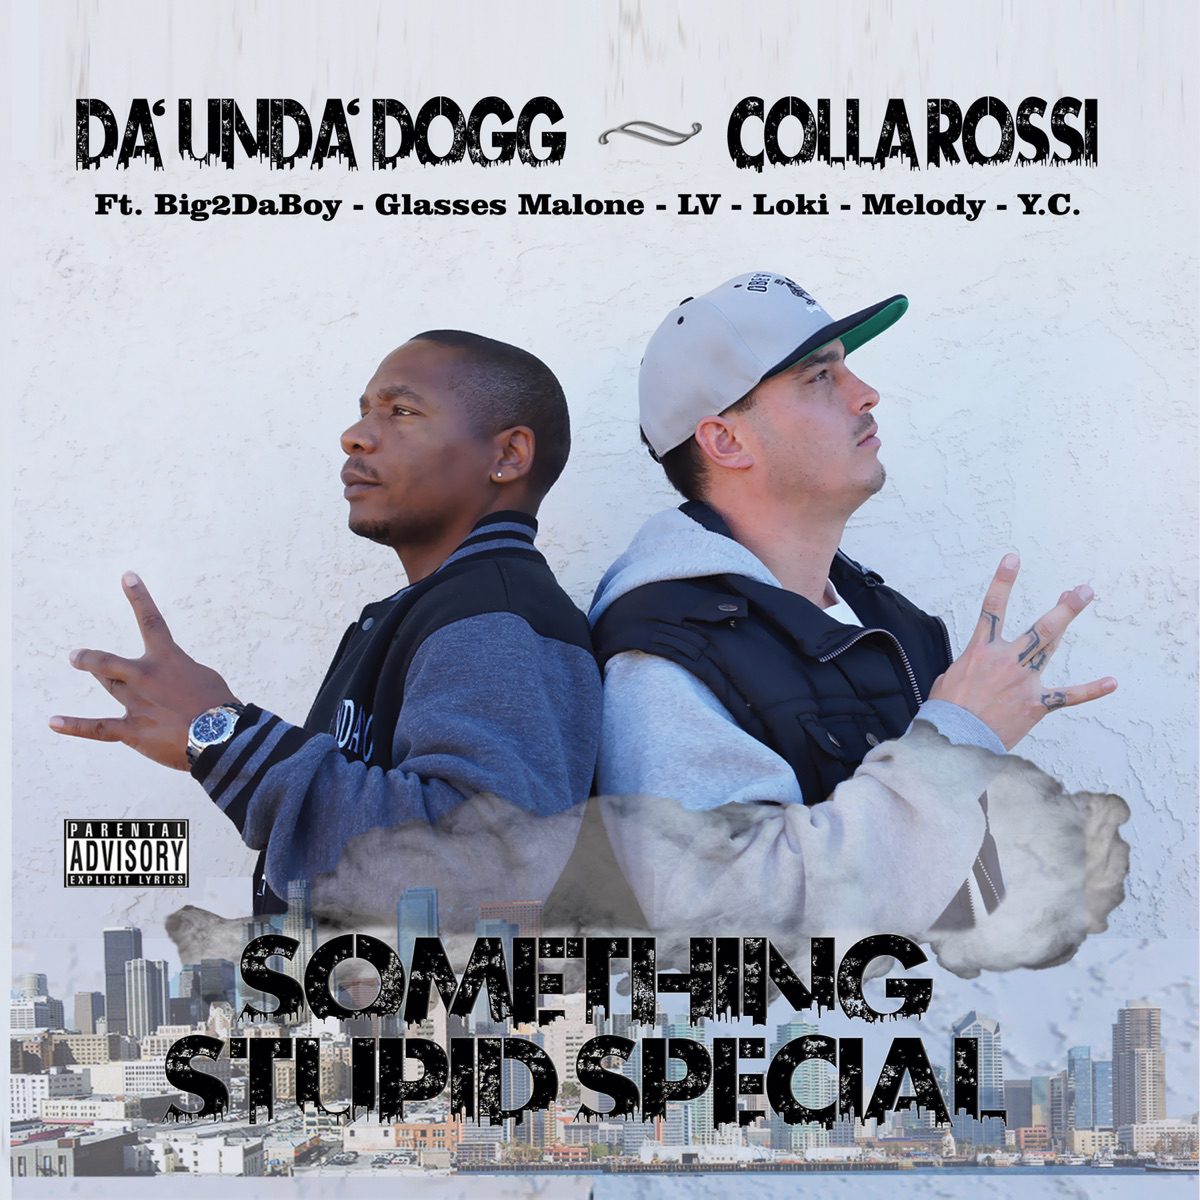 Da'Unda'Dogg & Colla Rossi - Something Stupid Special